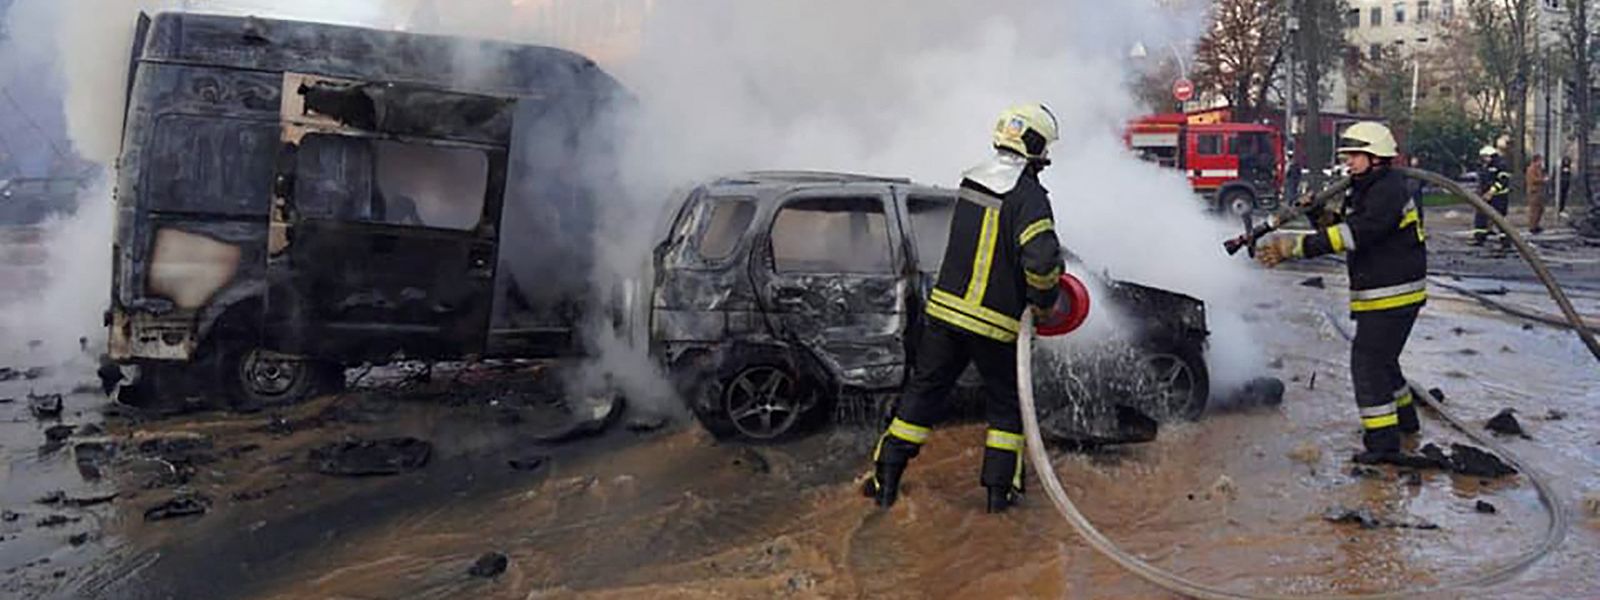 Unter Einsatz ihres Lebens versuchen Feuerwehrleute in Kiew, brennende Autowracks zu löschen.